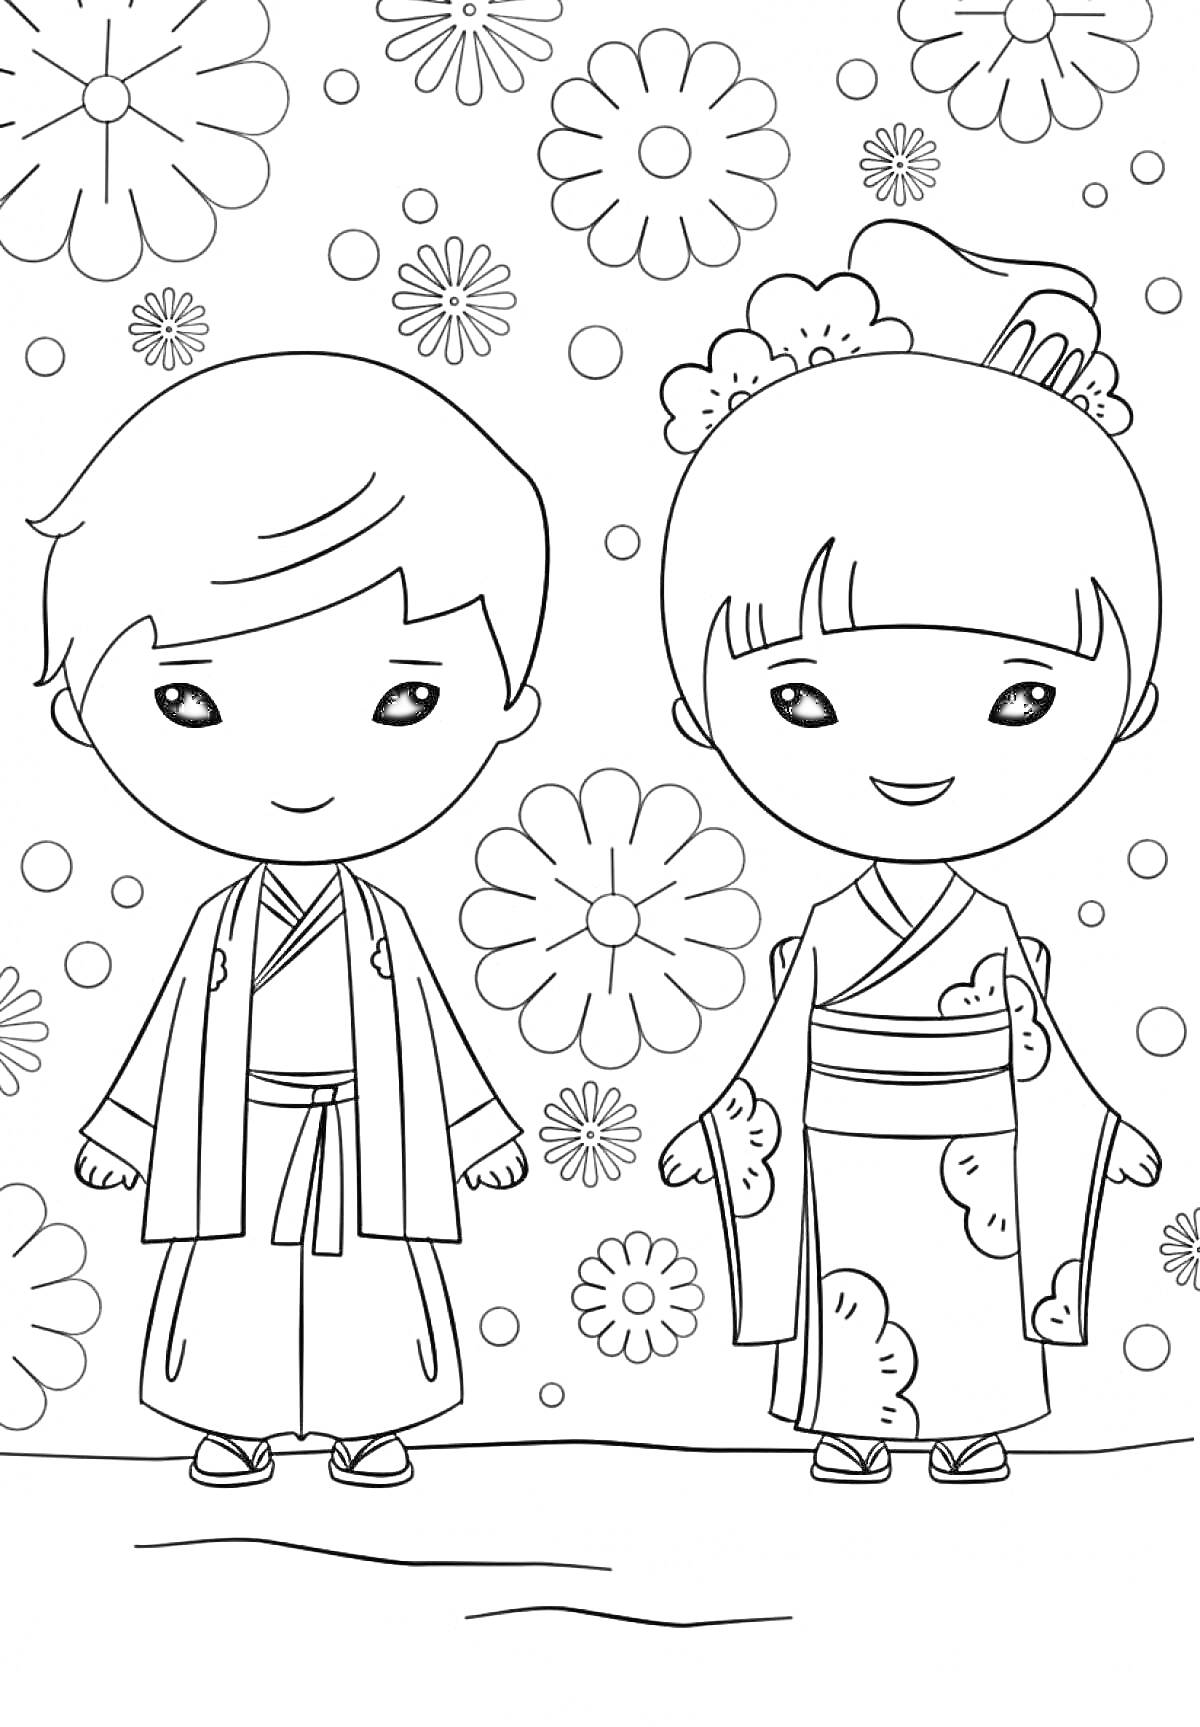 Раскраска Девочка в кимоно и мальчик в традиционной одежде на фоне цветов